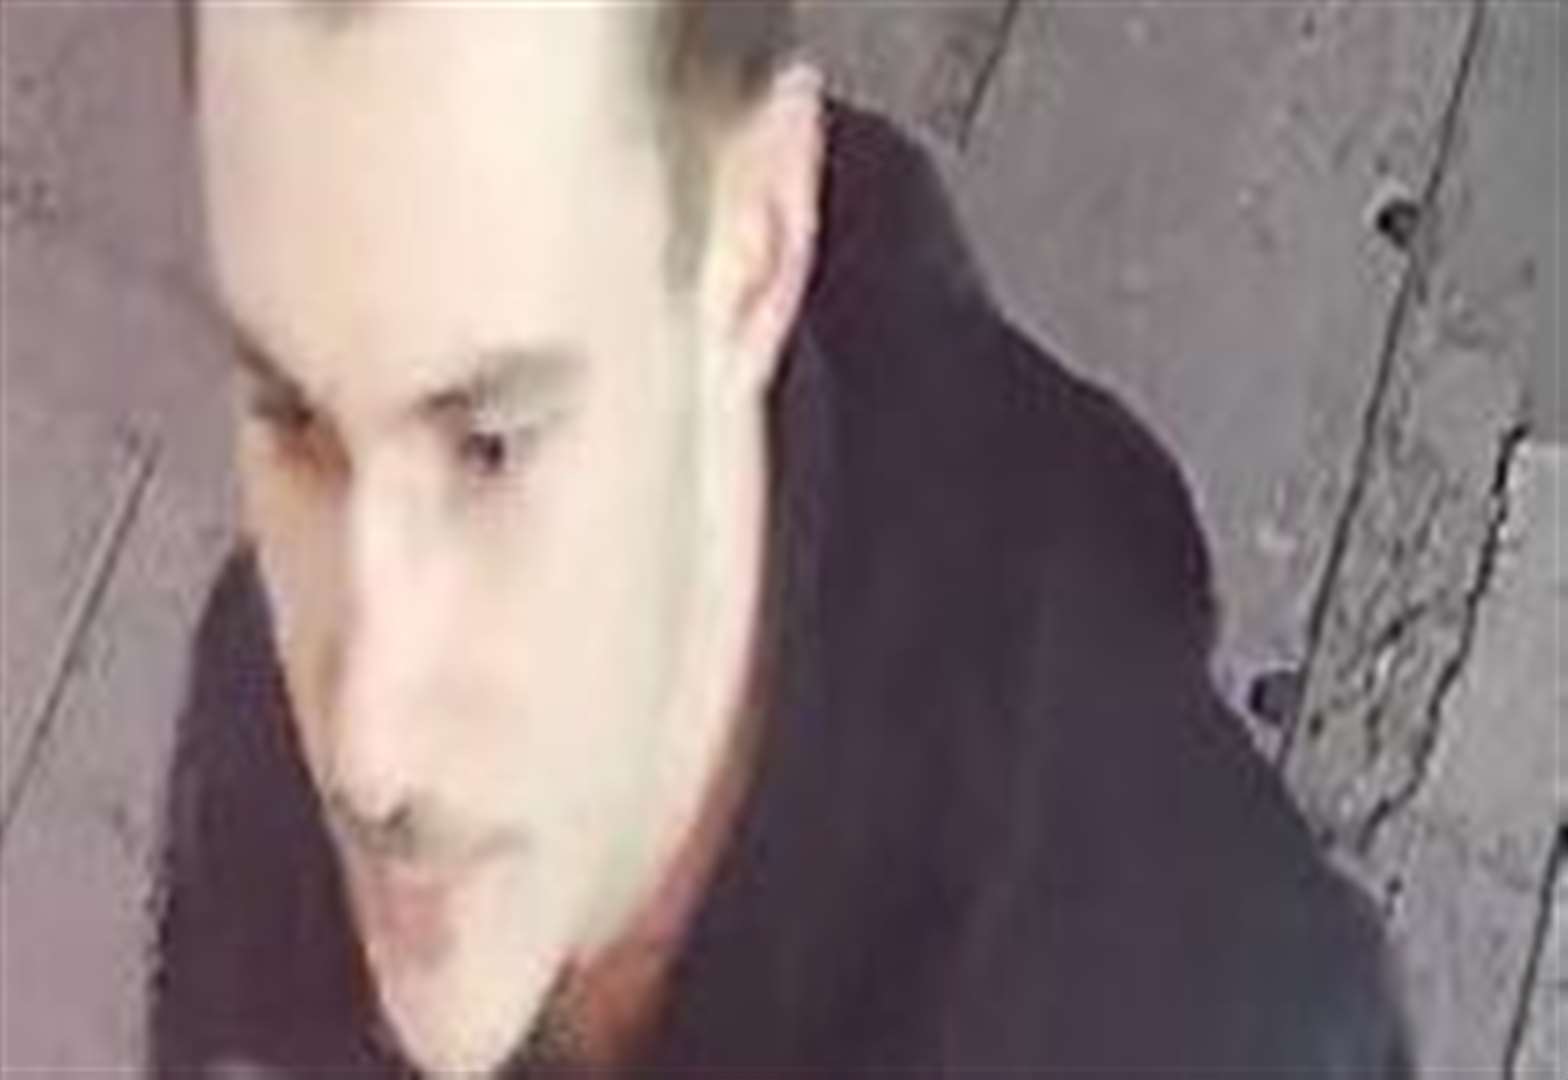 CCTV image released after assault 